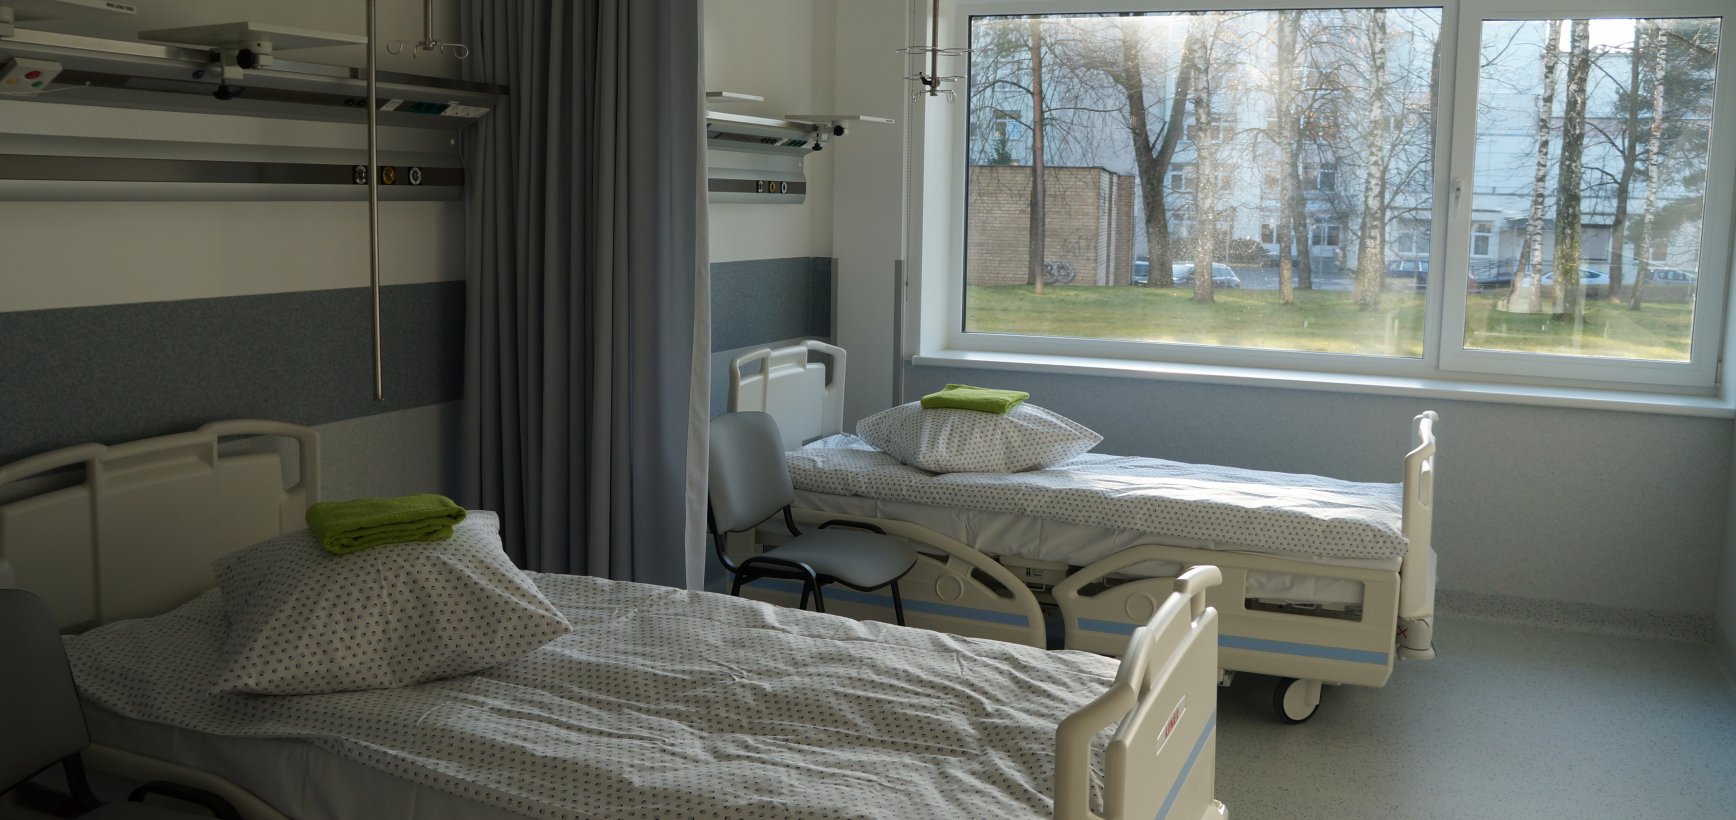 Kovai su infekcinėmis ligomis – moderni ligoninė